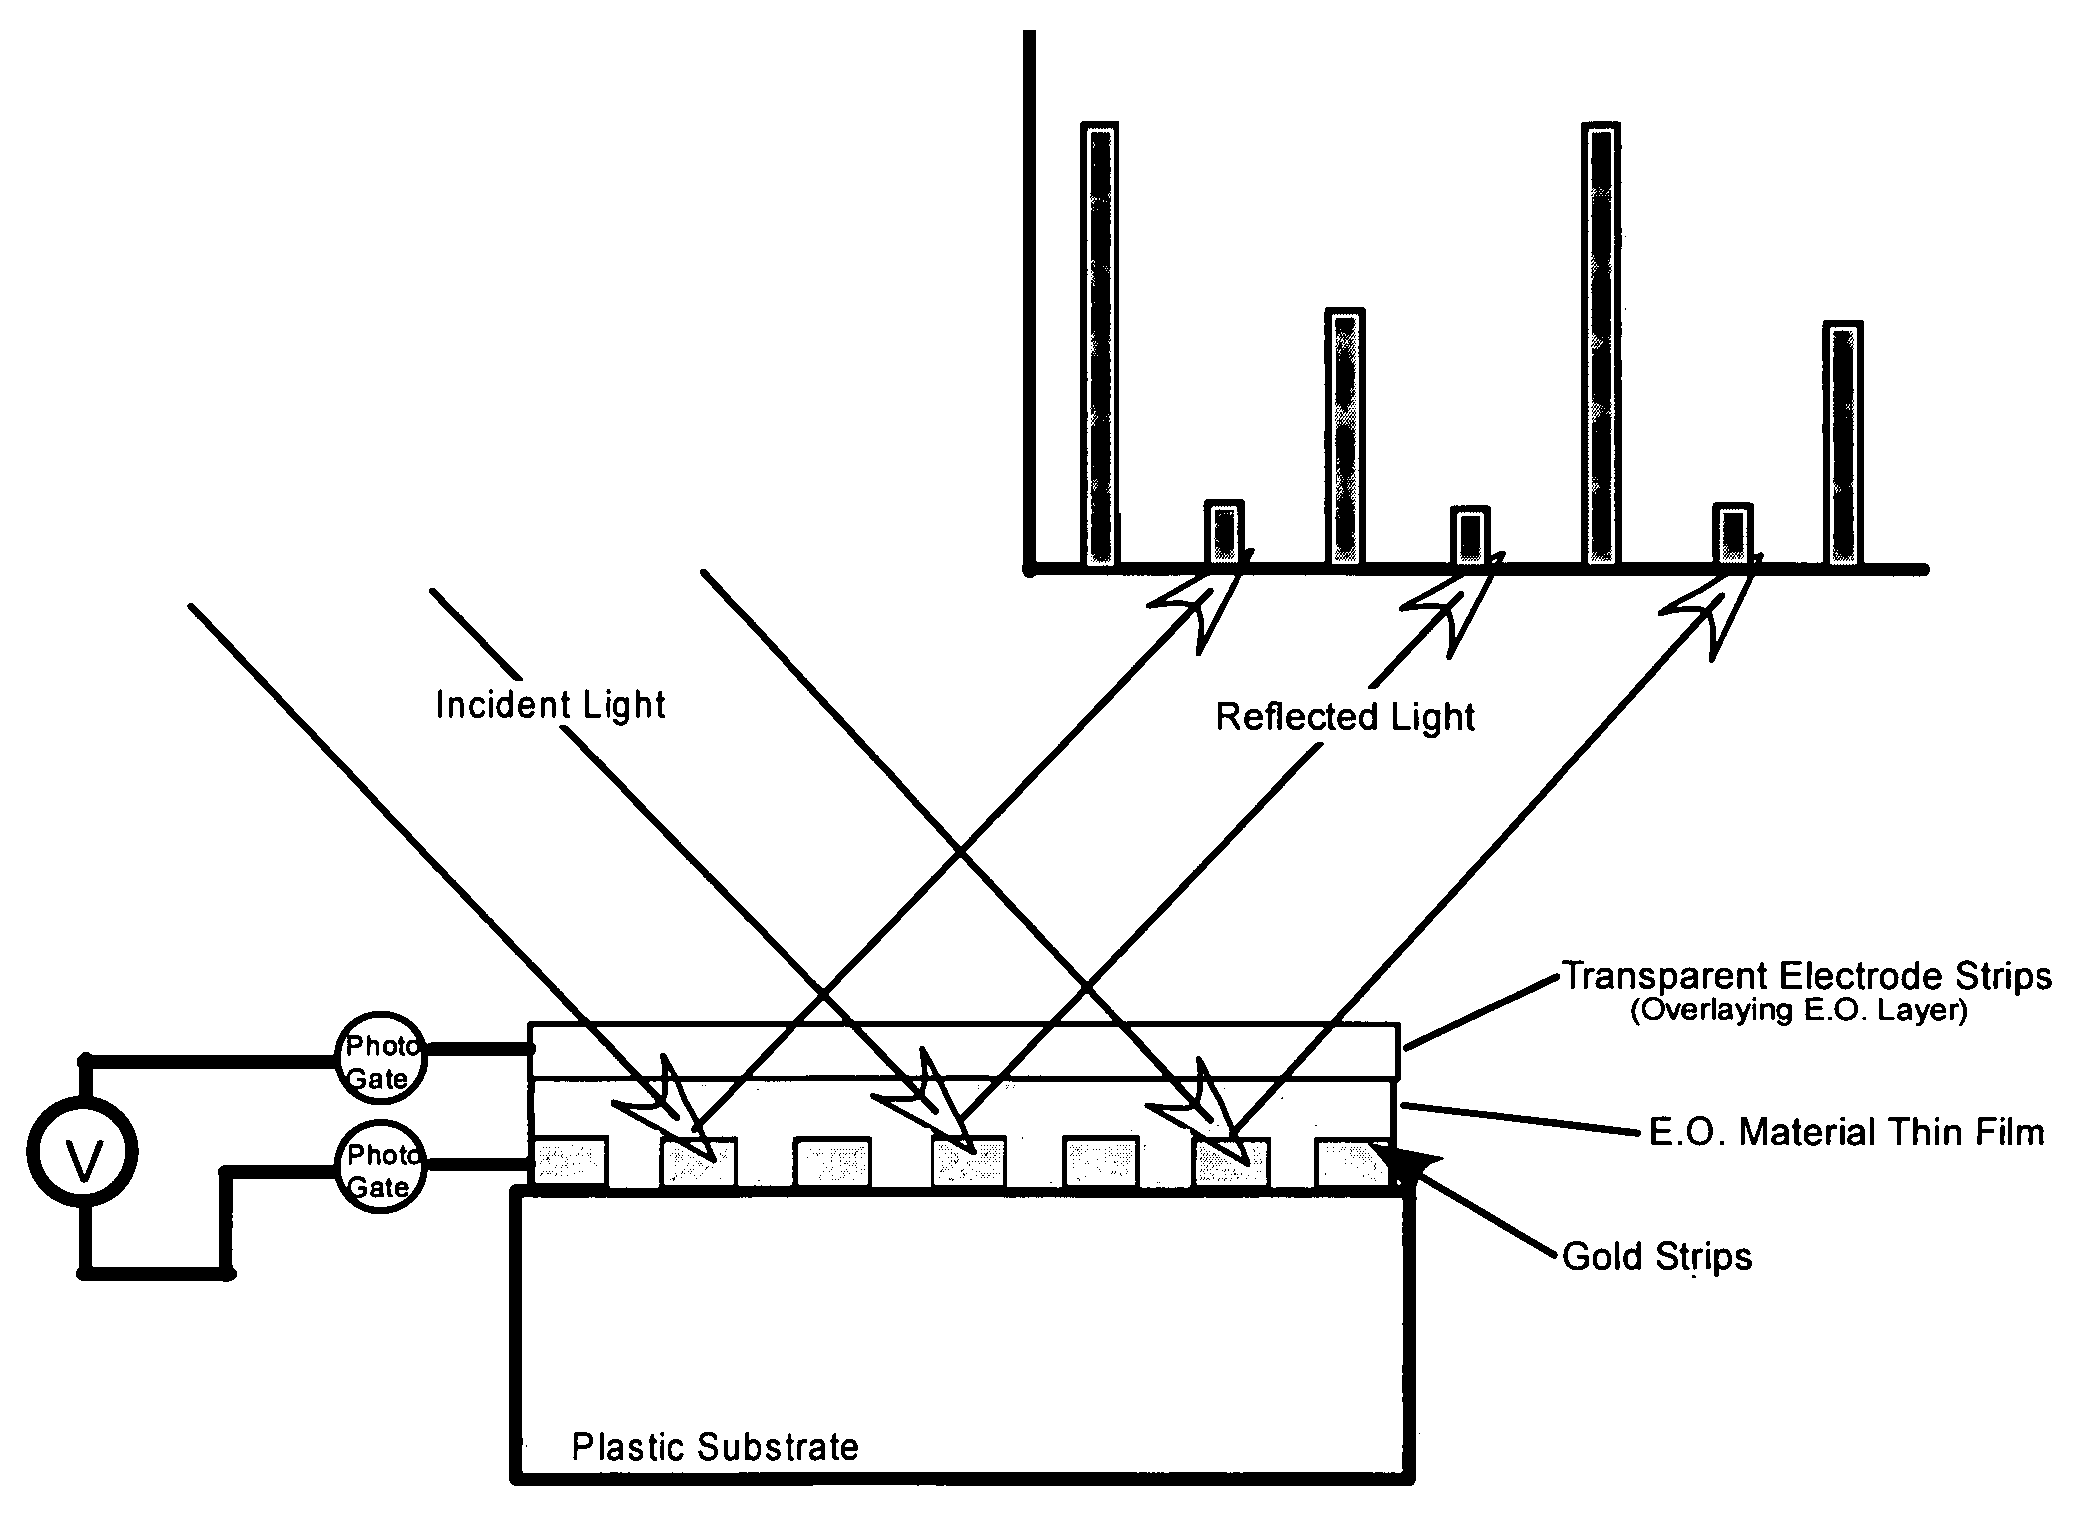 Electro-optic array interface